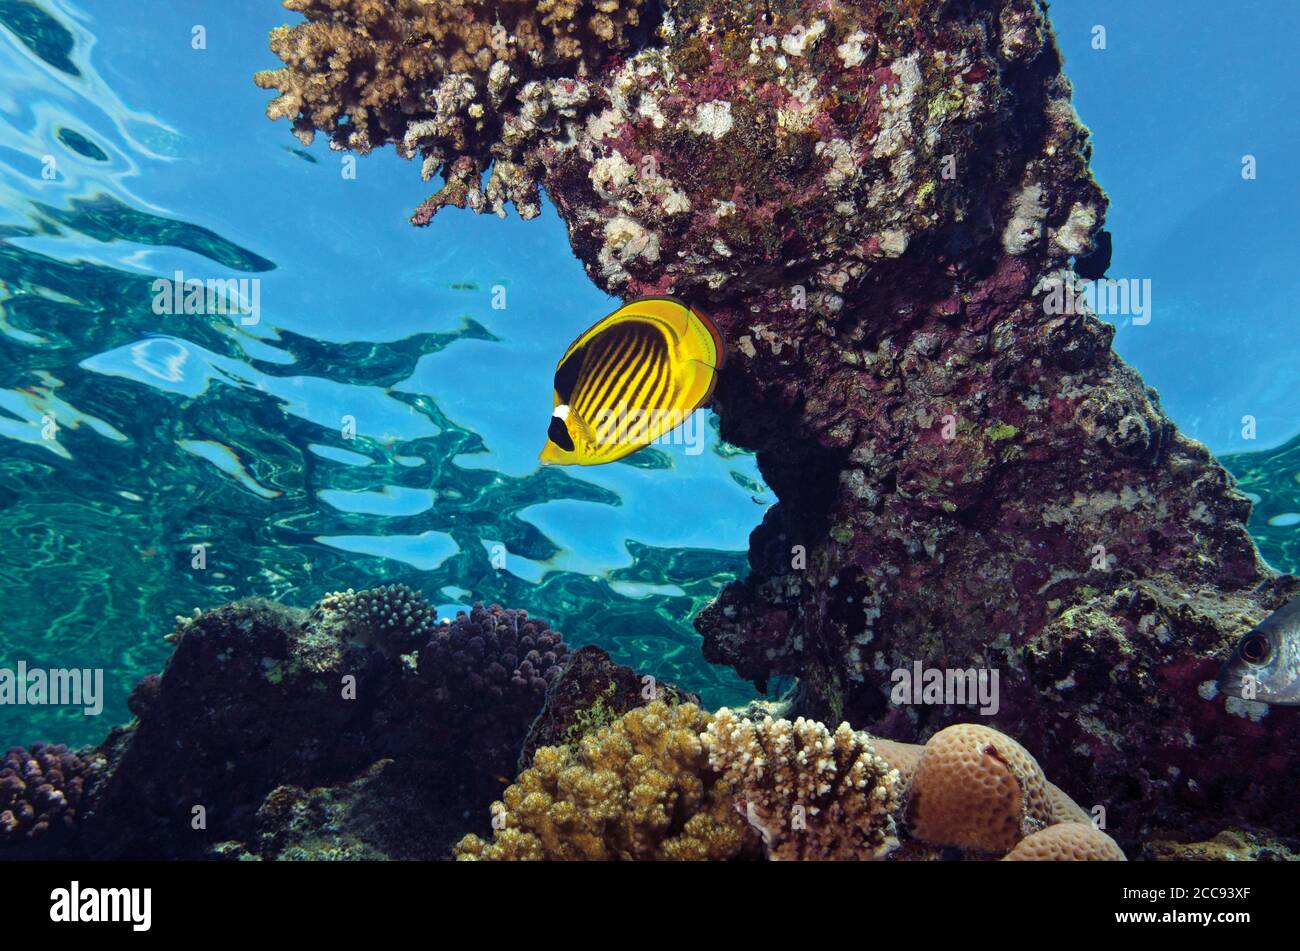 Pesce farfalla del Racoon del Mar Rosso, Chaetodon fascciatus, riparo nella barriera corallina, vicino alle acque di superficie, Alam Marsa, Mar Rosso, Egitto Foto Stock